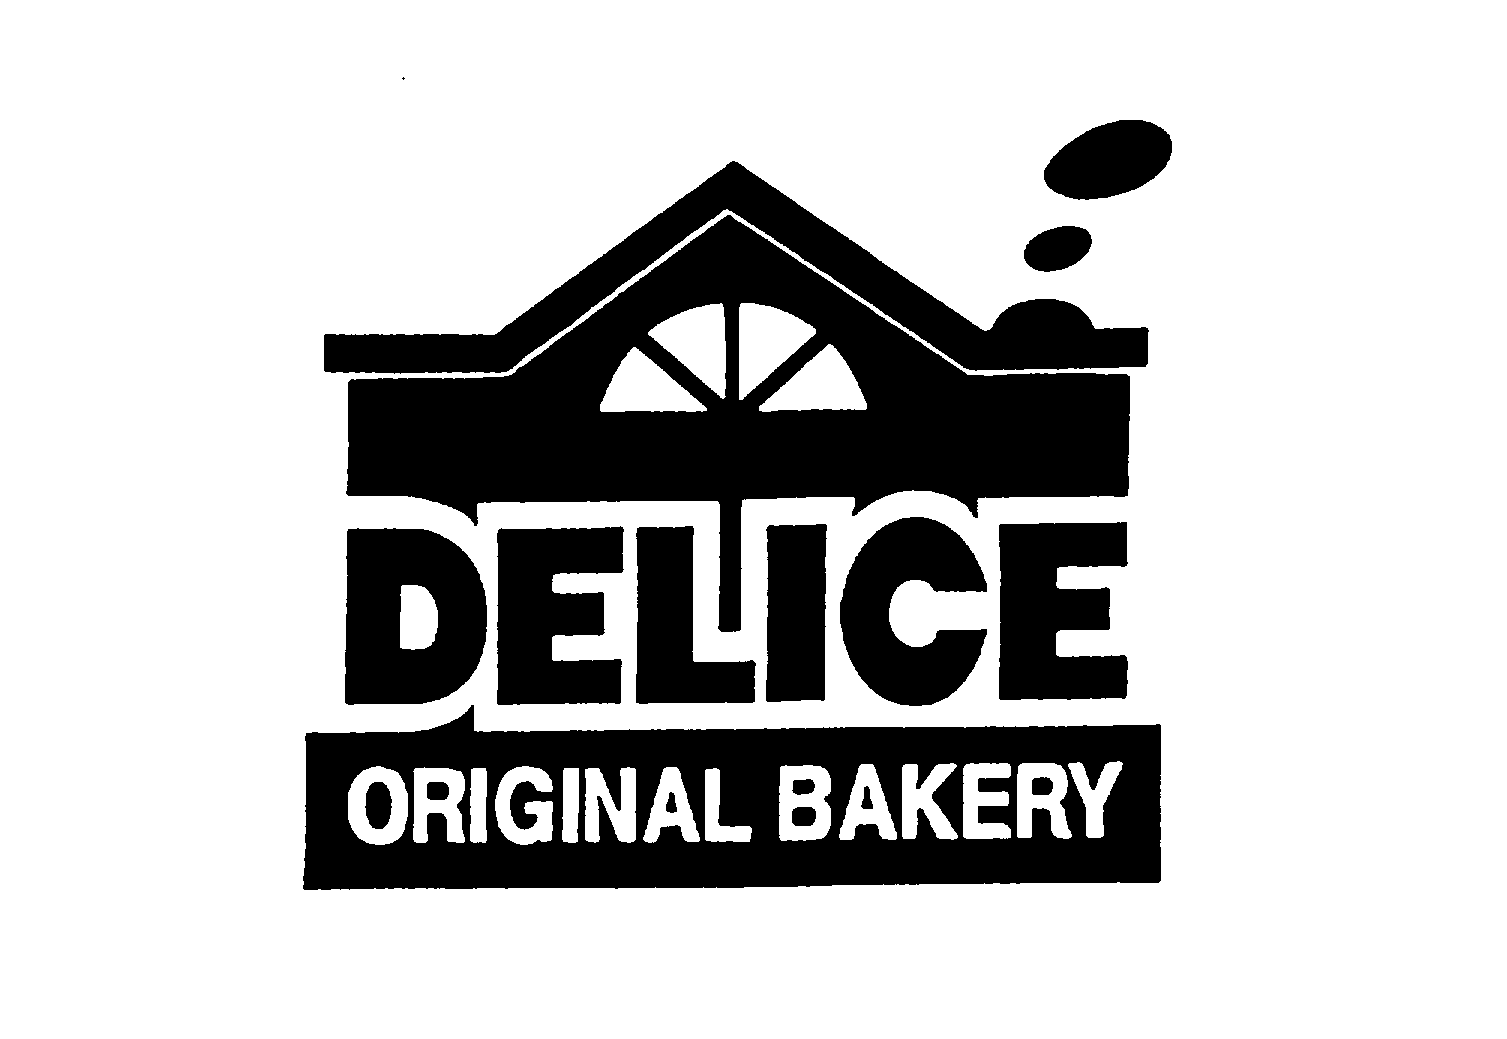  DELICE ORIGINAL BAKERY